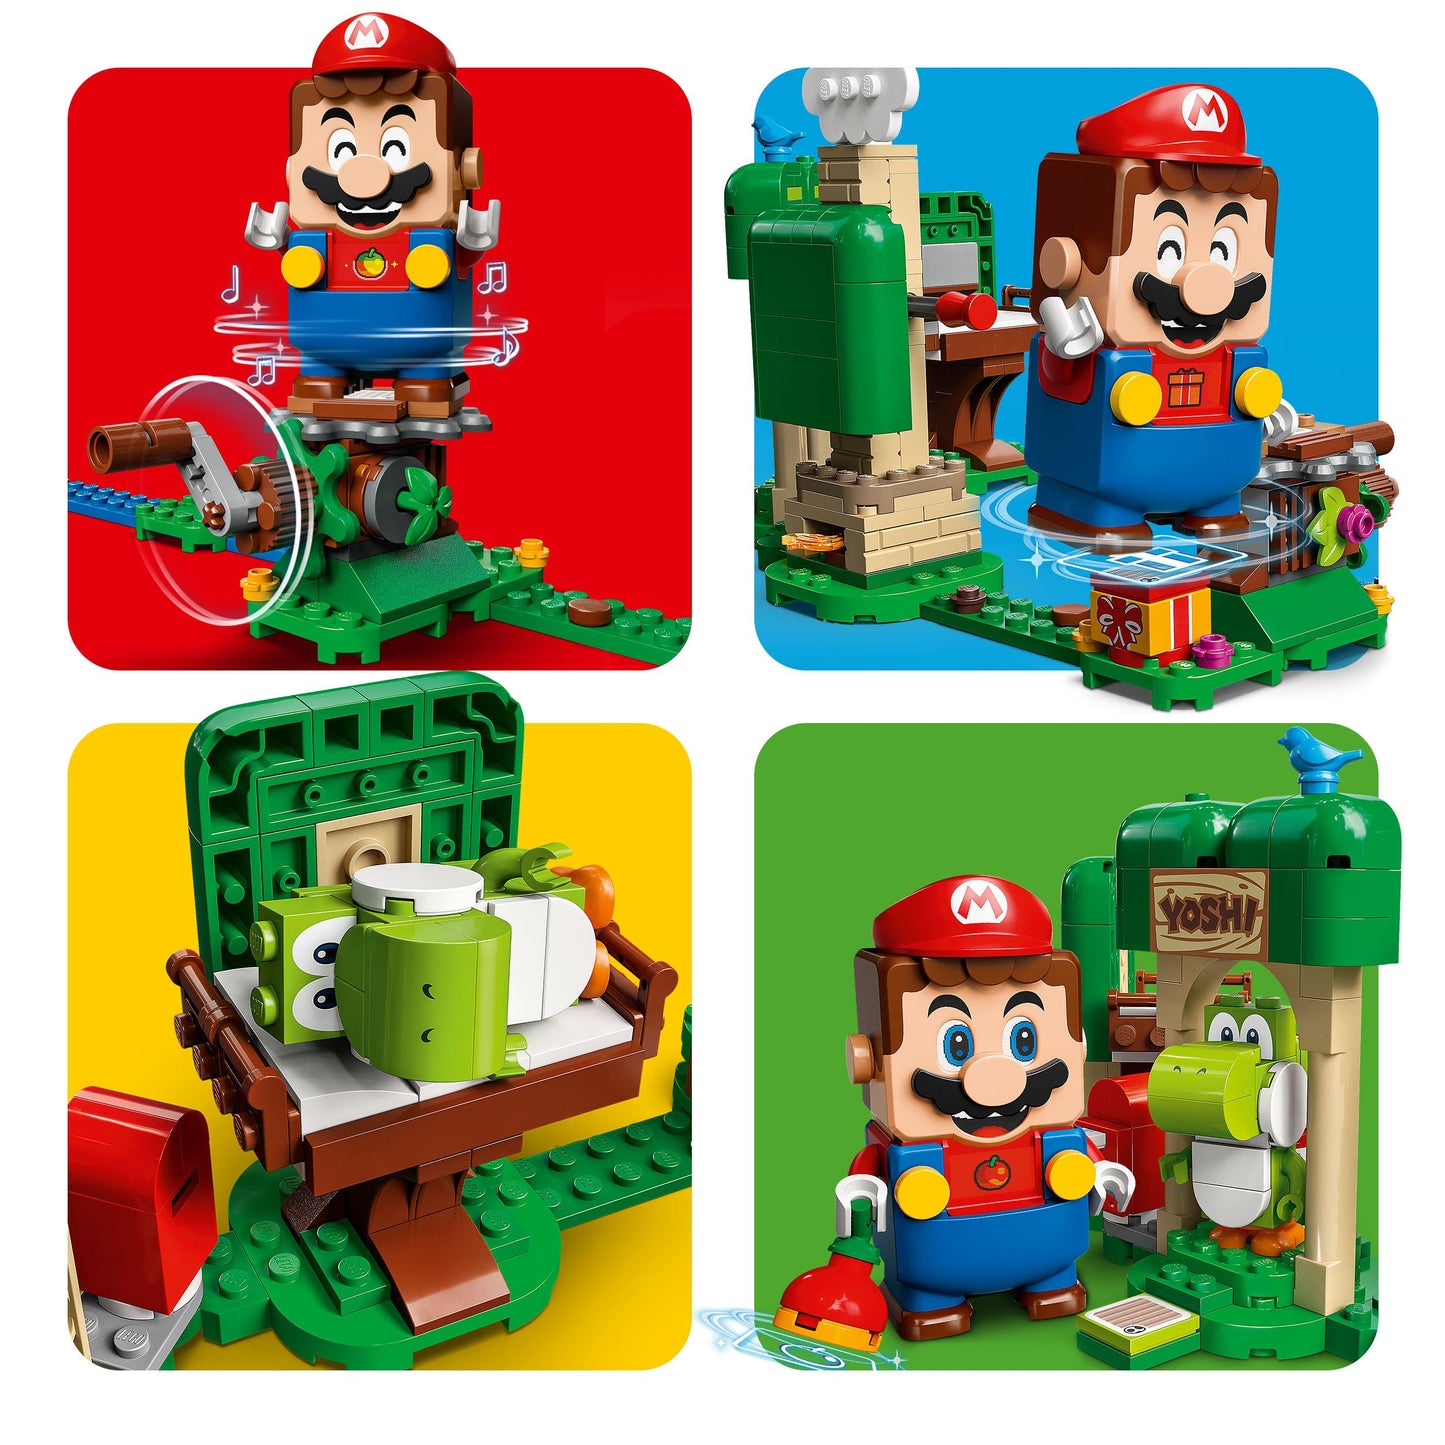 71406 LEGO Super Mario - Pack espansione Casa dei regali di Yoshi